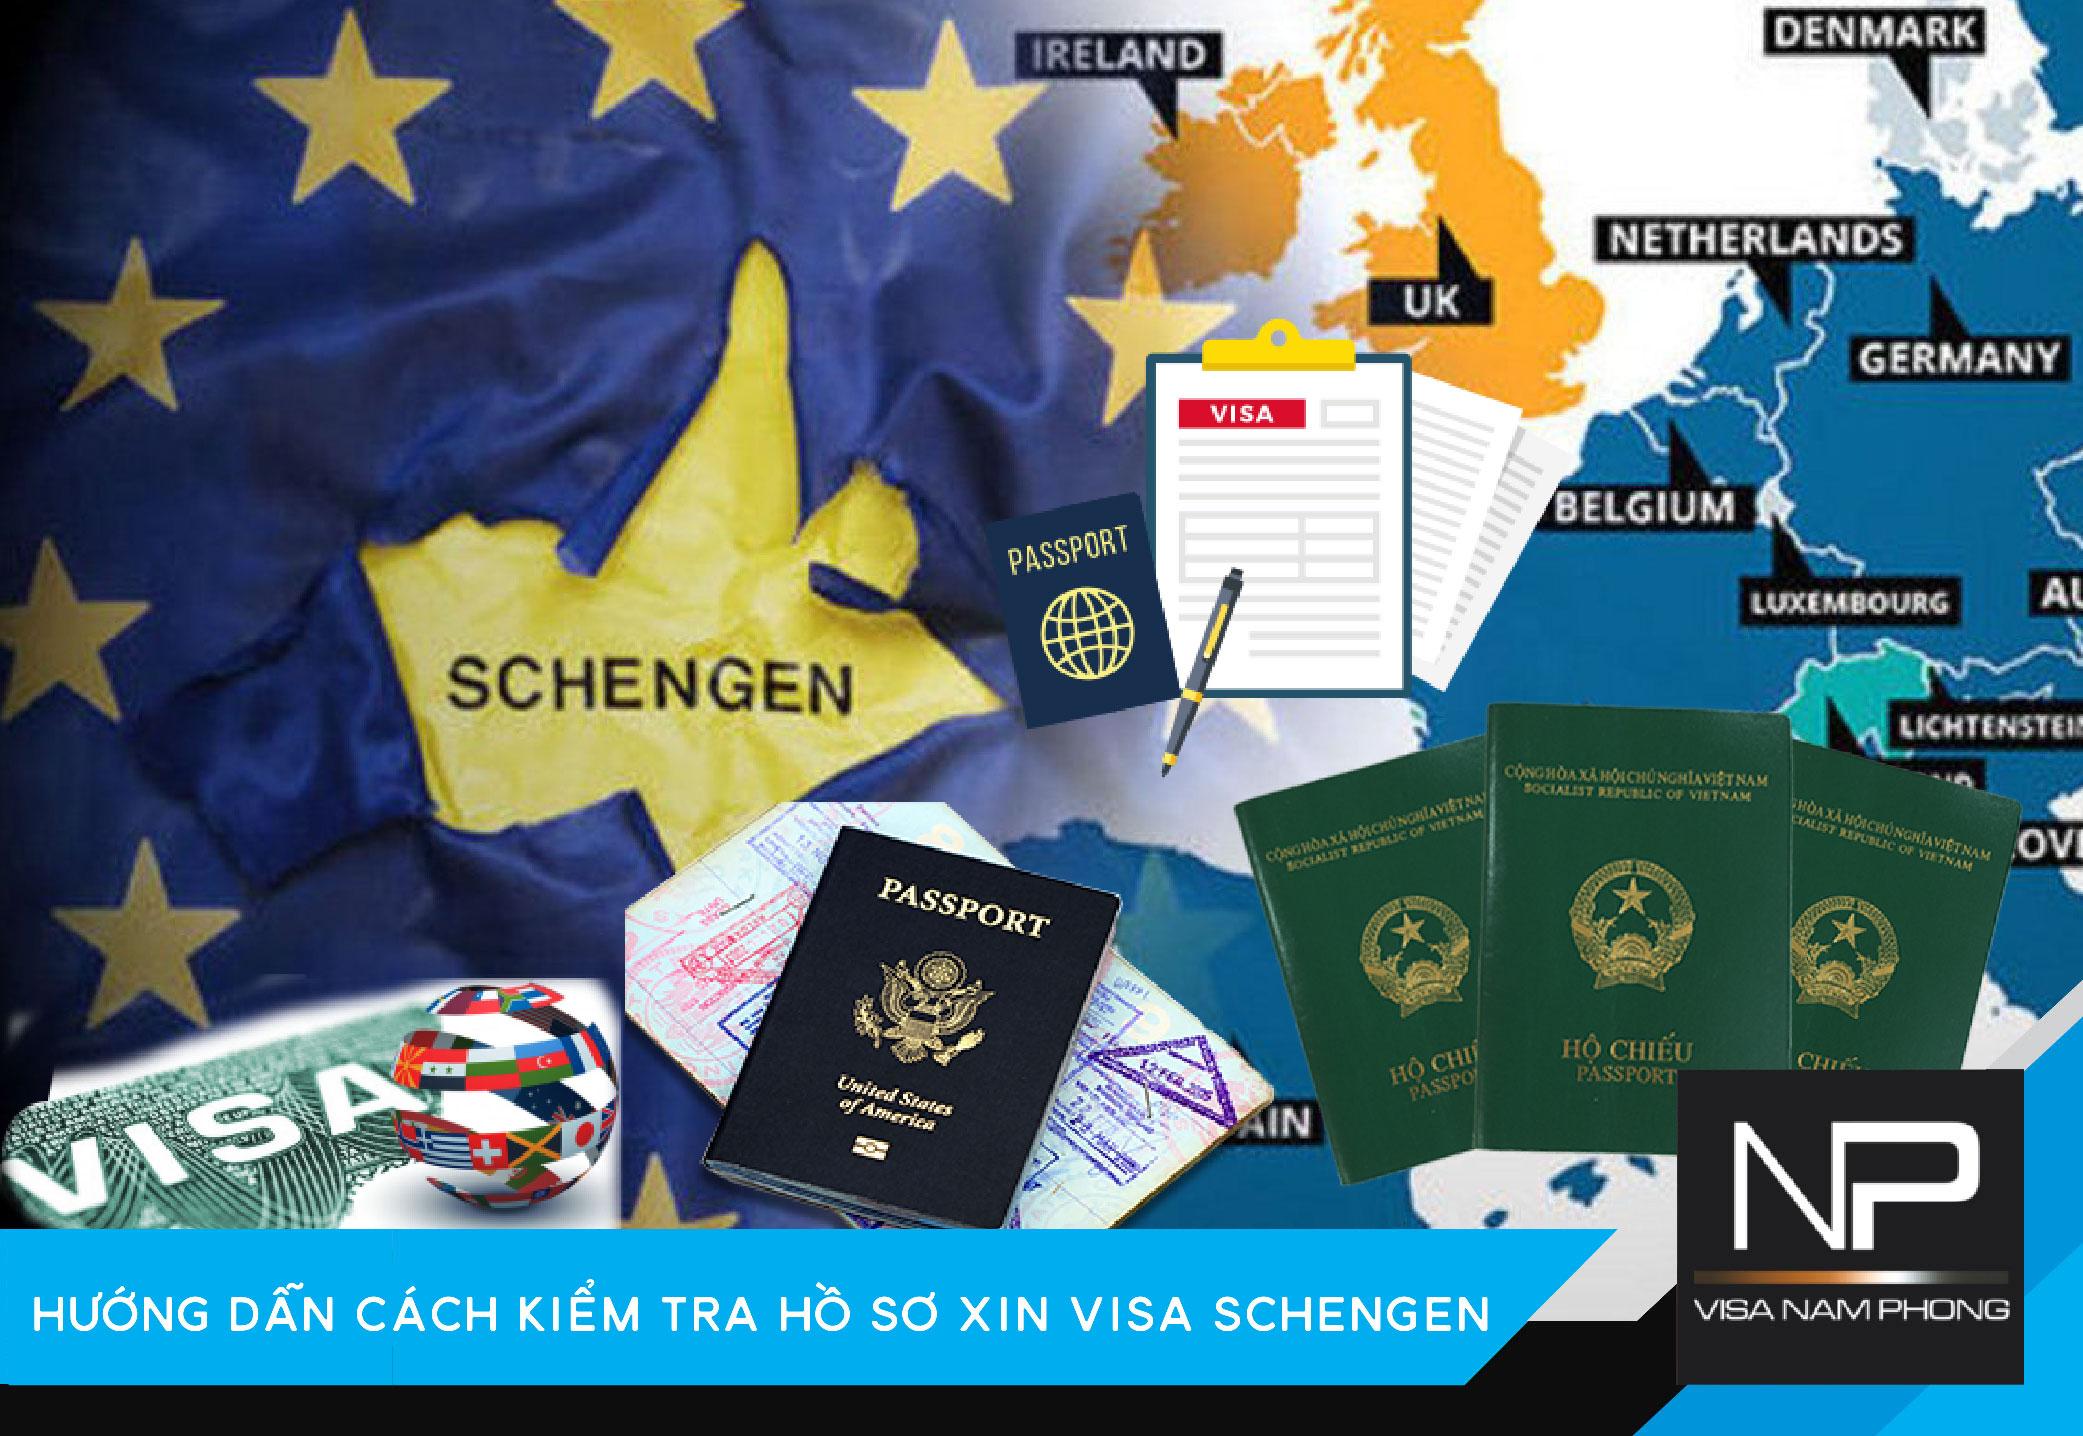 Hướng dẫn cách kiểm tra hồ sơ xin visa Schengen tại Hải Phòng